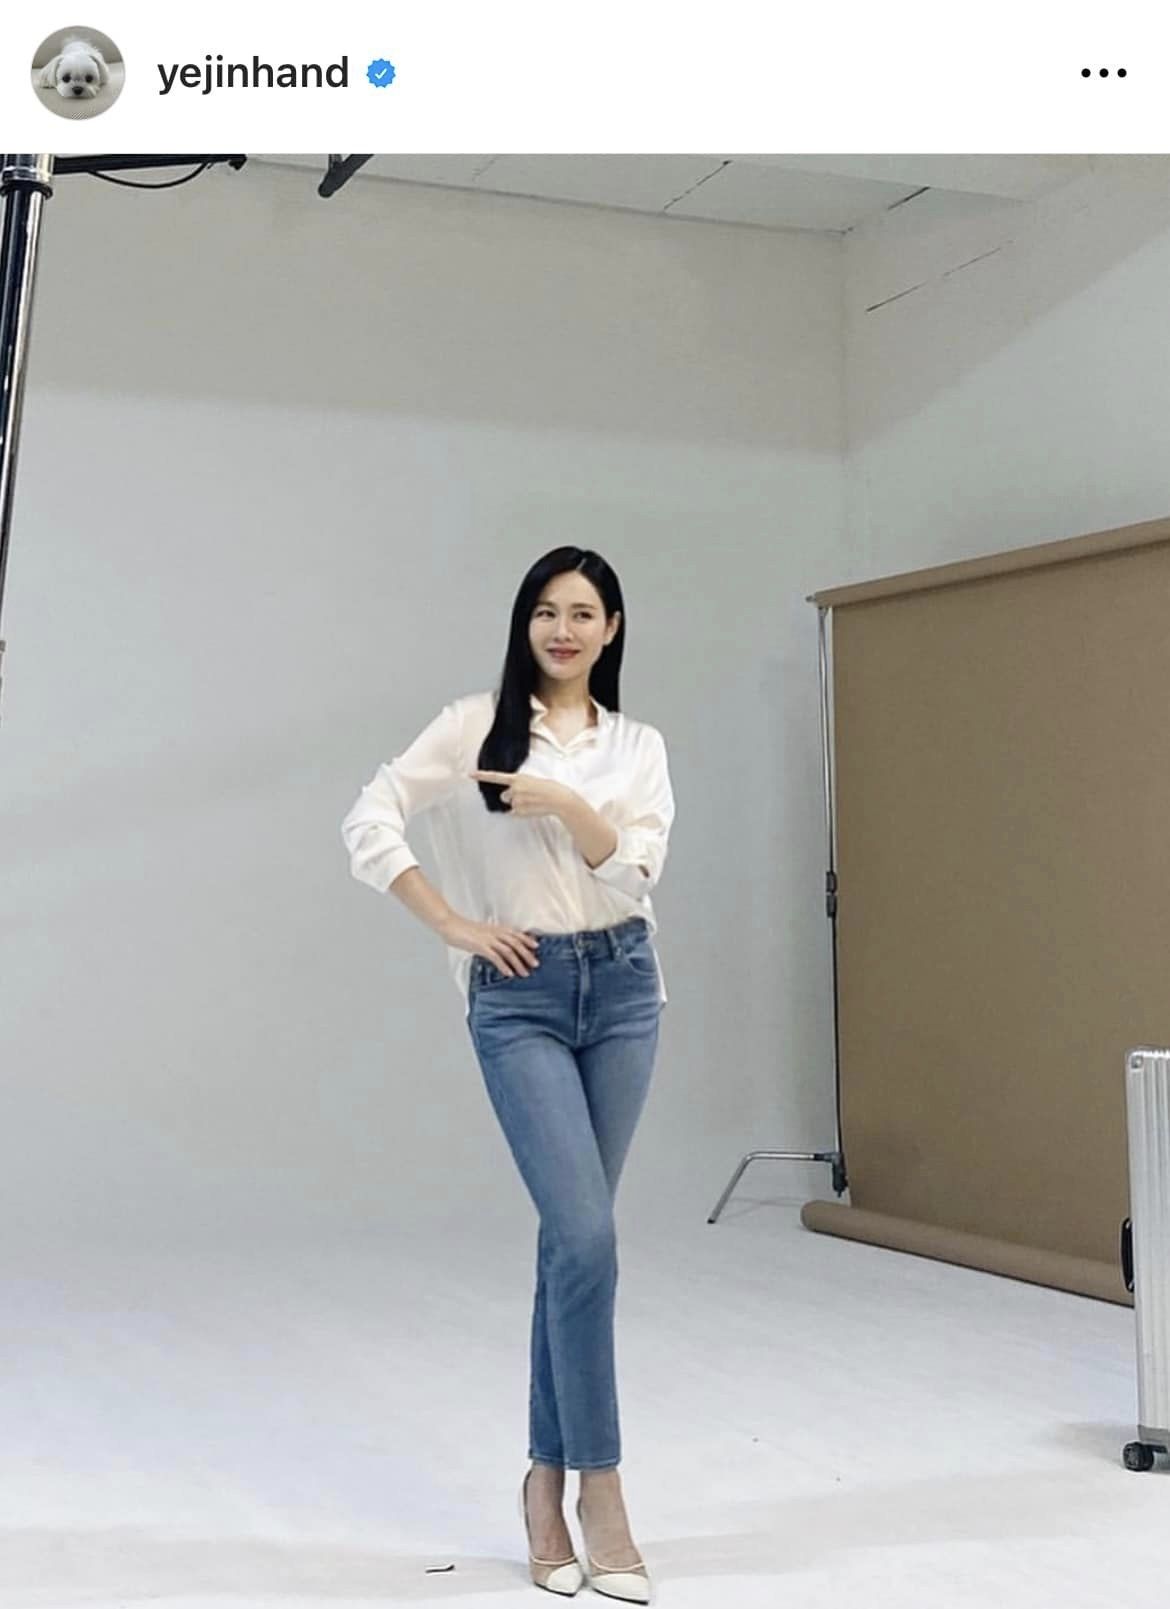 Hình ảnh mới nhất trên instagram Son Ye Jin chia sẻ cho thấy nữ diễn viên vẫn giữ được vóc dáng thon gọn sau khi sinh con